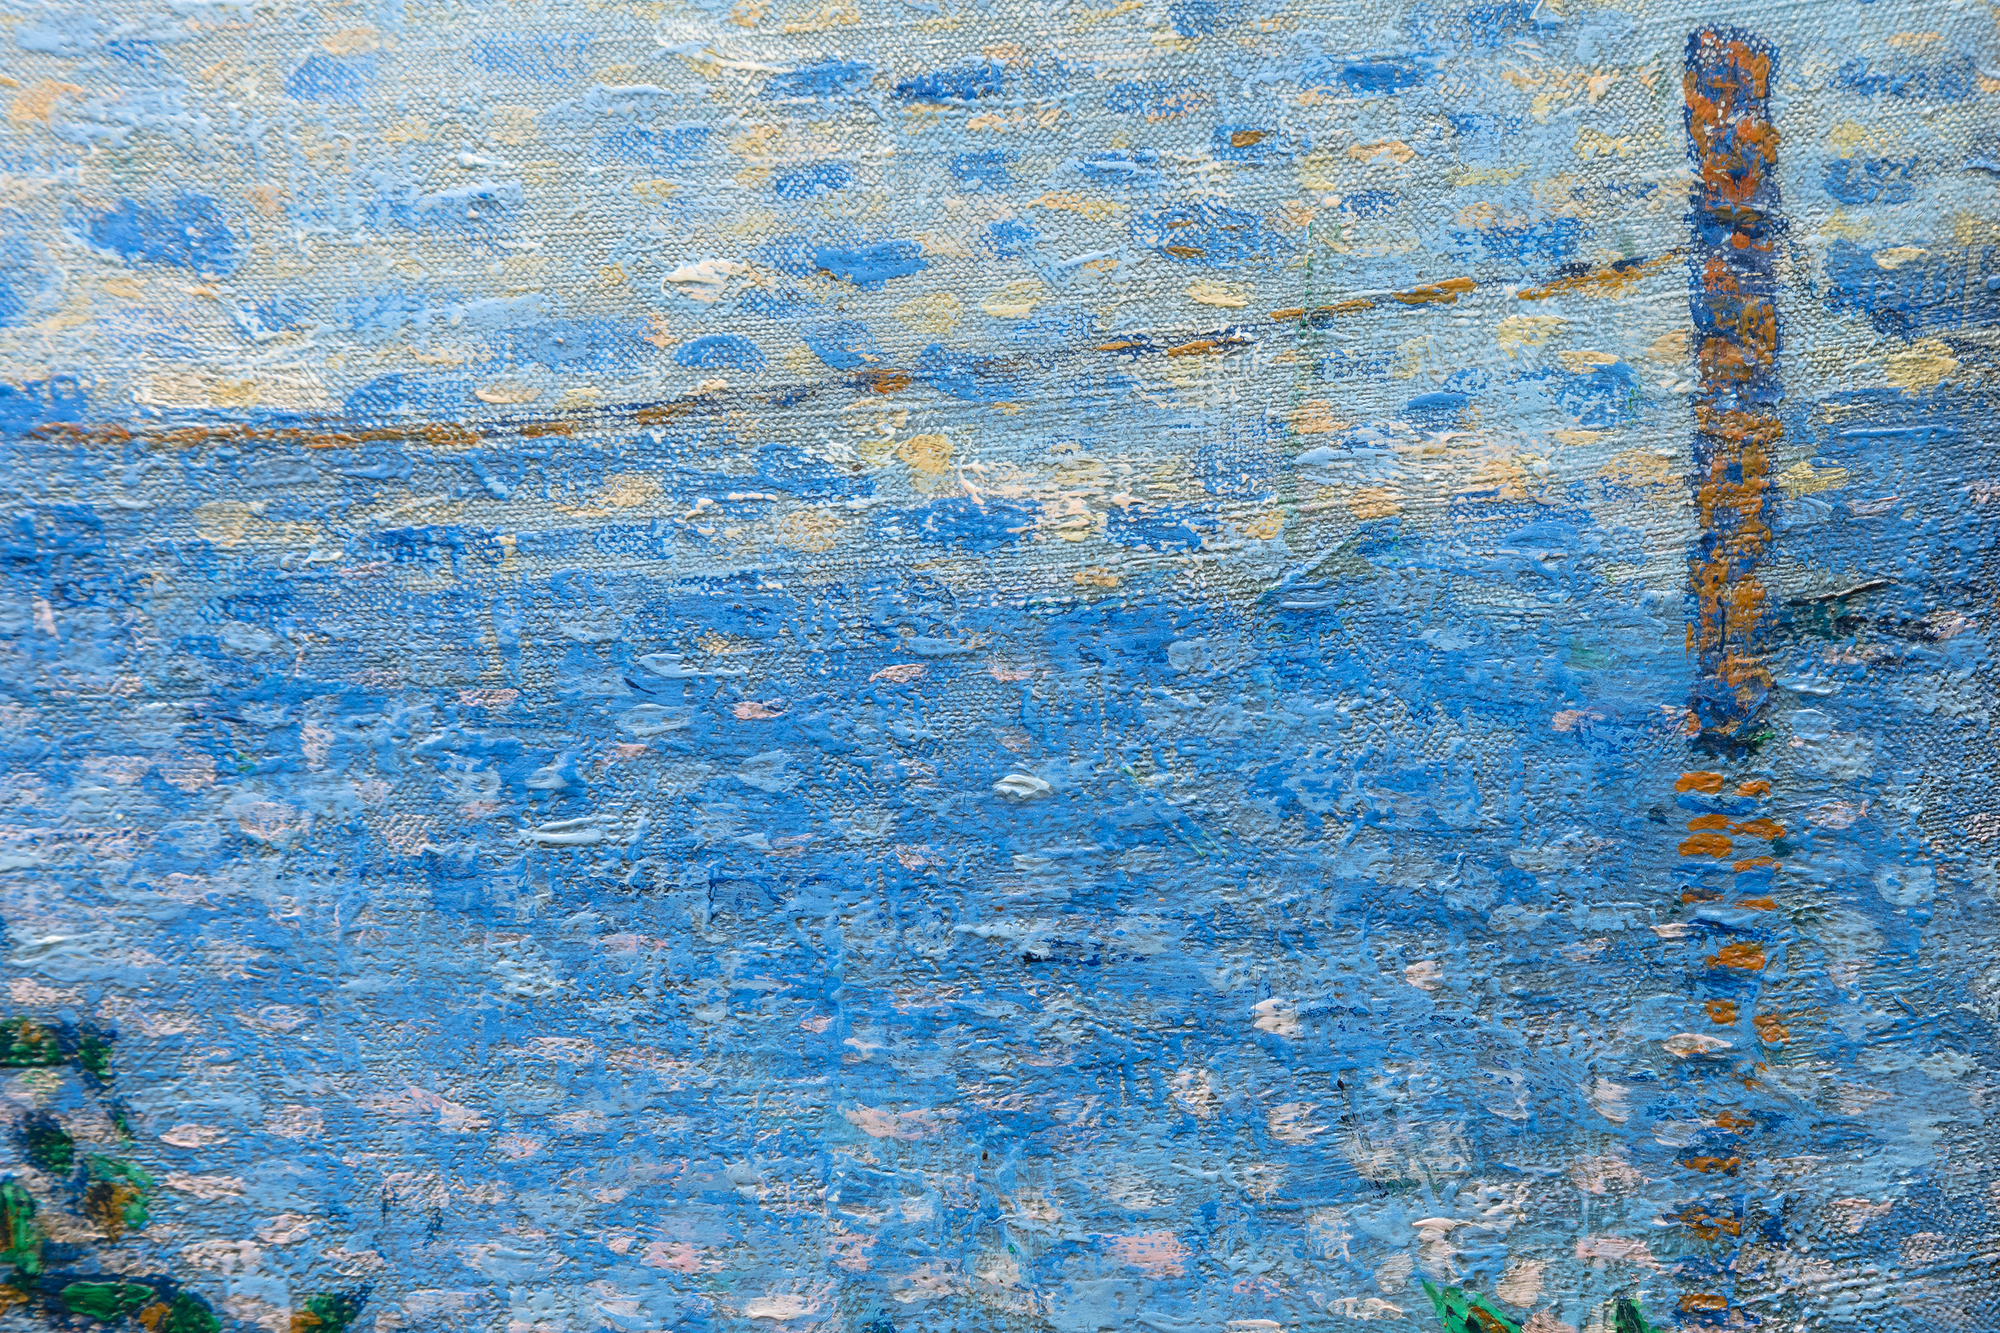 1886年5月15日，乔治-修拉（Georges Seurat）的最高成就《拉格朗日岛的星期天下午》在第八届印象派画展上亮相，一场新艺术运动的视觉宣言就此诞生。修拉可以称得上是最初的 "科学印象派"，其创作方式后来被称为点彩主义或分割主义。然而，是他的朋友和知己，24岁的保罗-西尼亚克，以及他们不断的对话，导致了他们在理解光和颜色的物理学和出现的风格上的合作。西尼亚克是一个没有受过训练的印象派画家，但却是一个才华横溢的画家，他的气质完全适合于实现艰苦的笔触和色彩所需的严格和纪律性。西尼亚克很快就吸收了这种技术。他还见证了修拉两年来在巨大的《大山》上建立无数个未混合的色点的艰辛历程。西尼亚克是个外向的人，修拉是个内向的人，他们一起颠覆了印象派的进程，并改变了现代艺术的进程。